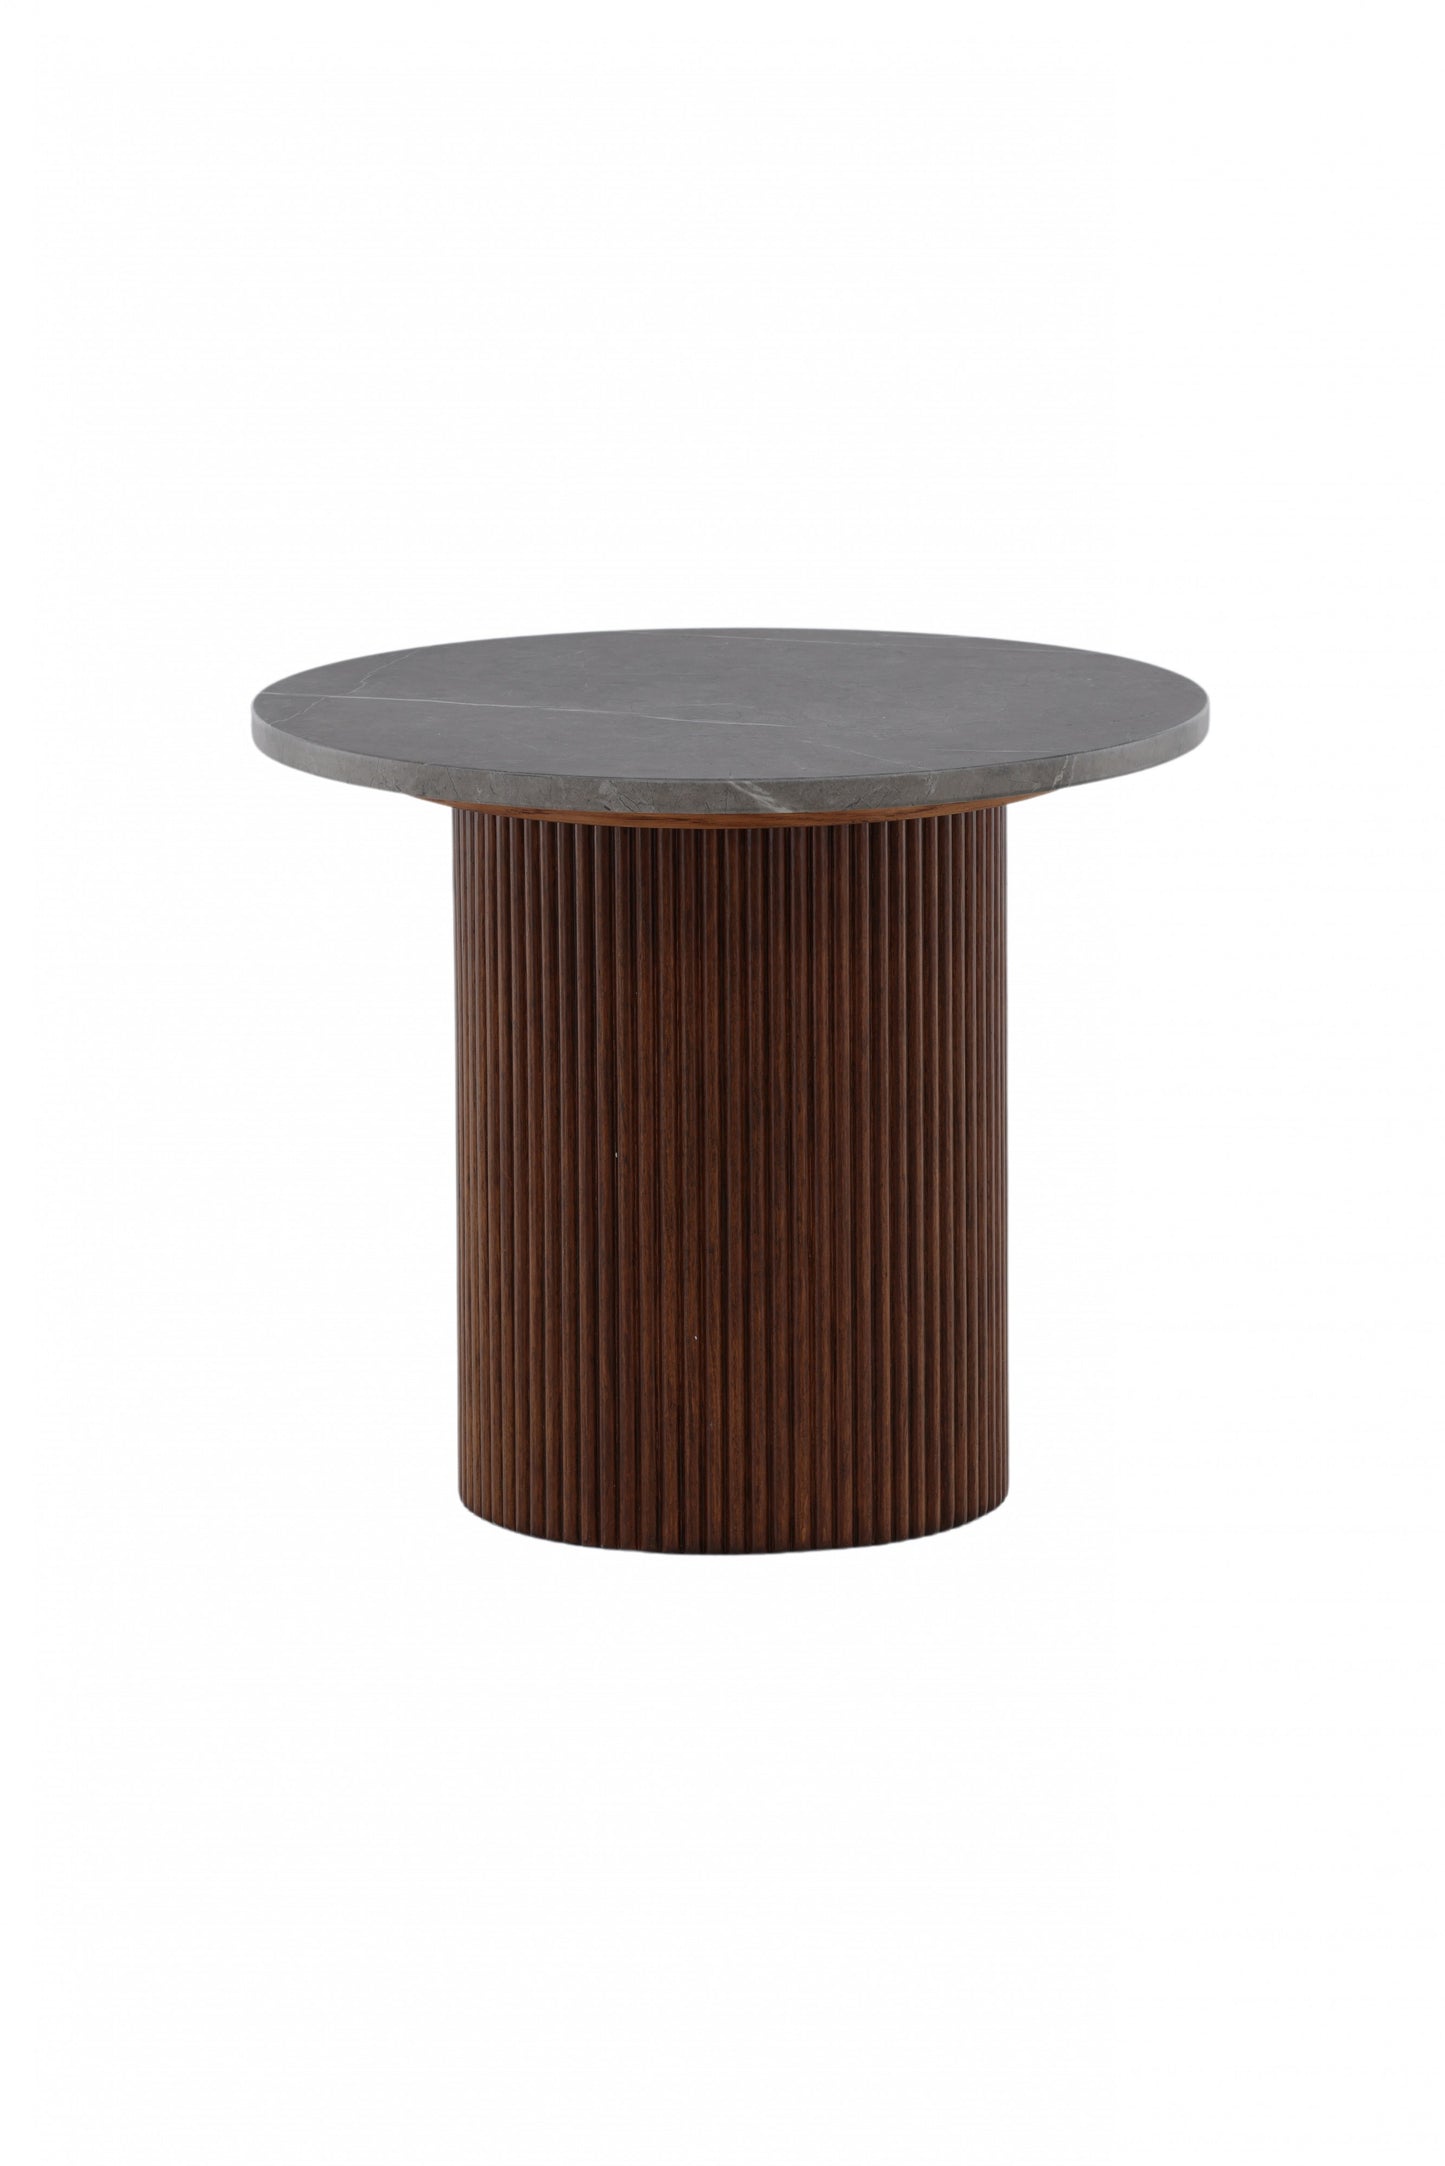 Härön - Sidebord, Mørkebrun / Mørkegrå Marmor